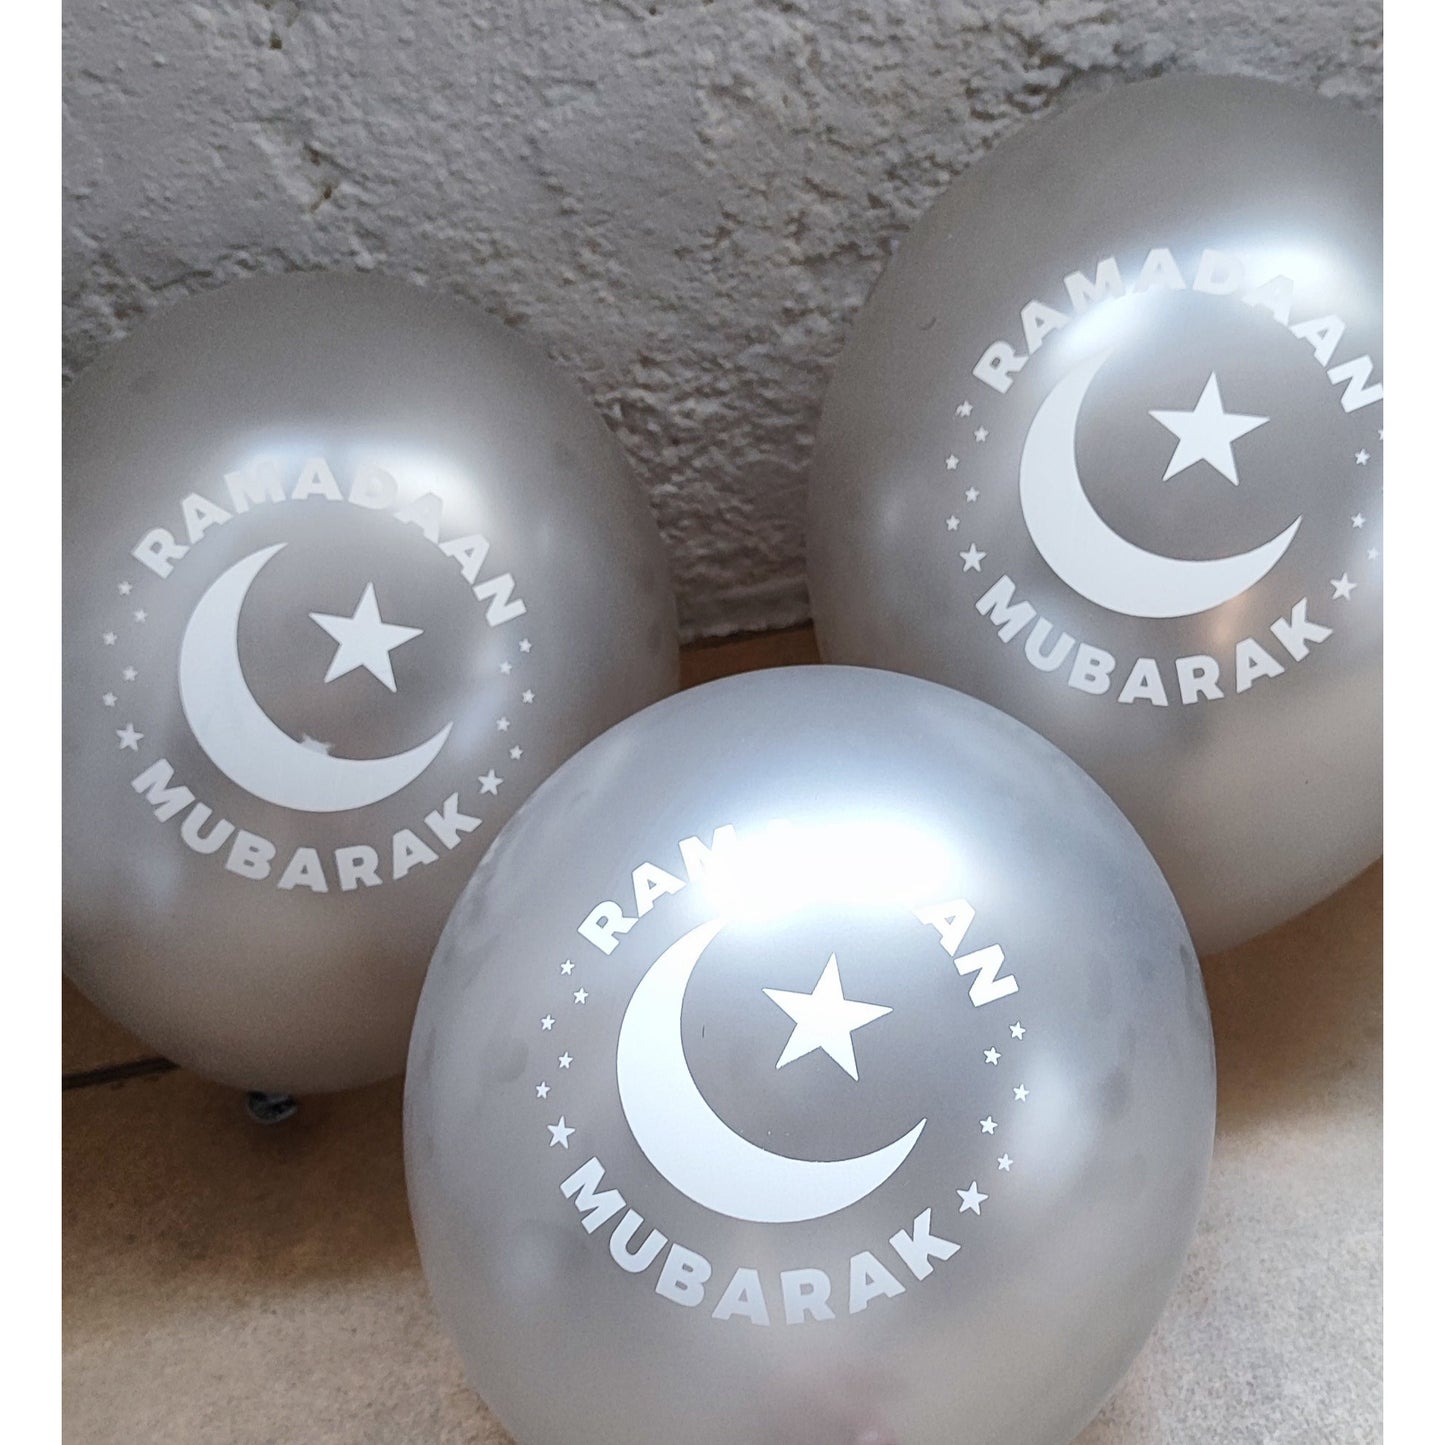 Ramadan Mubarak - Silver Balloons (Pack of 10)